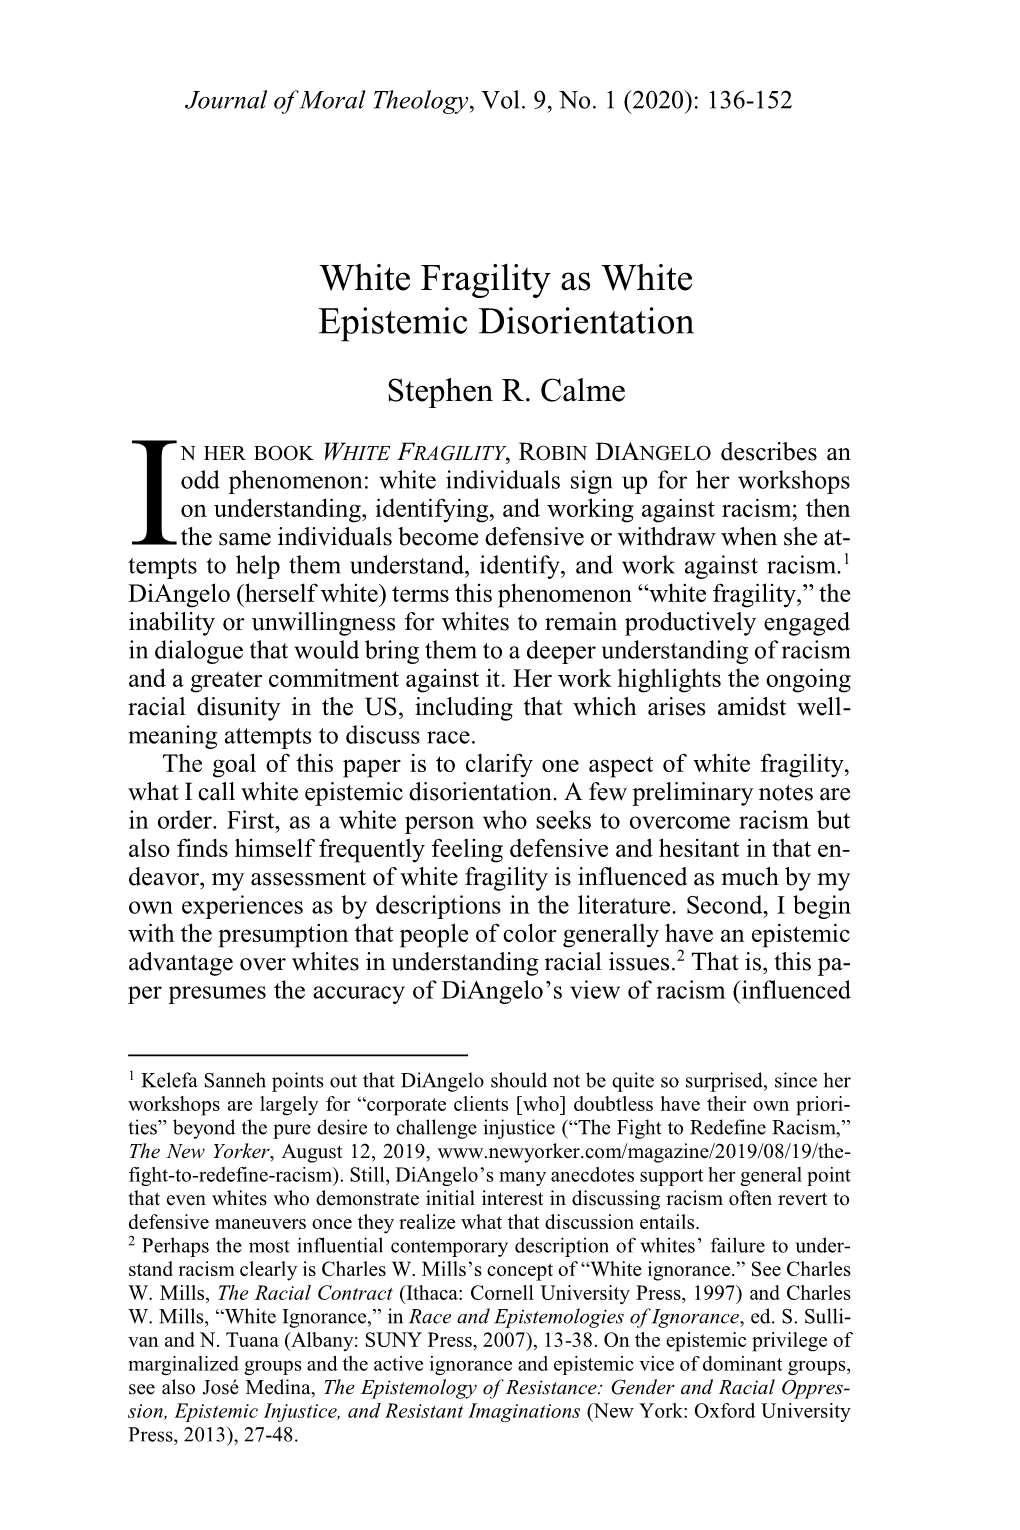 White Fragility As White Epistemic Disorientation